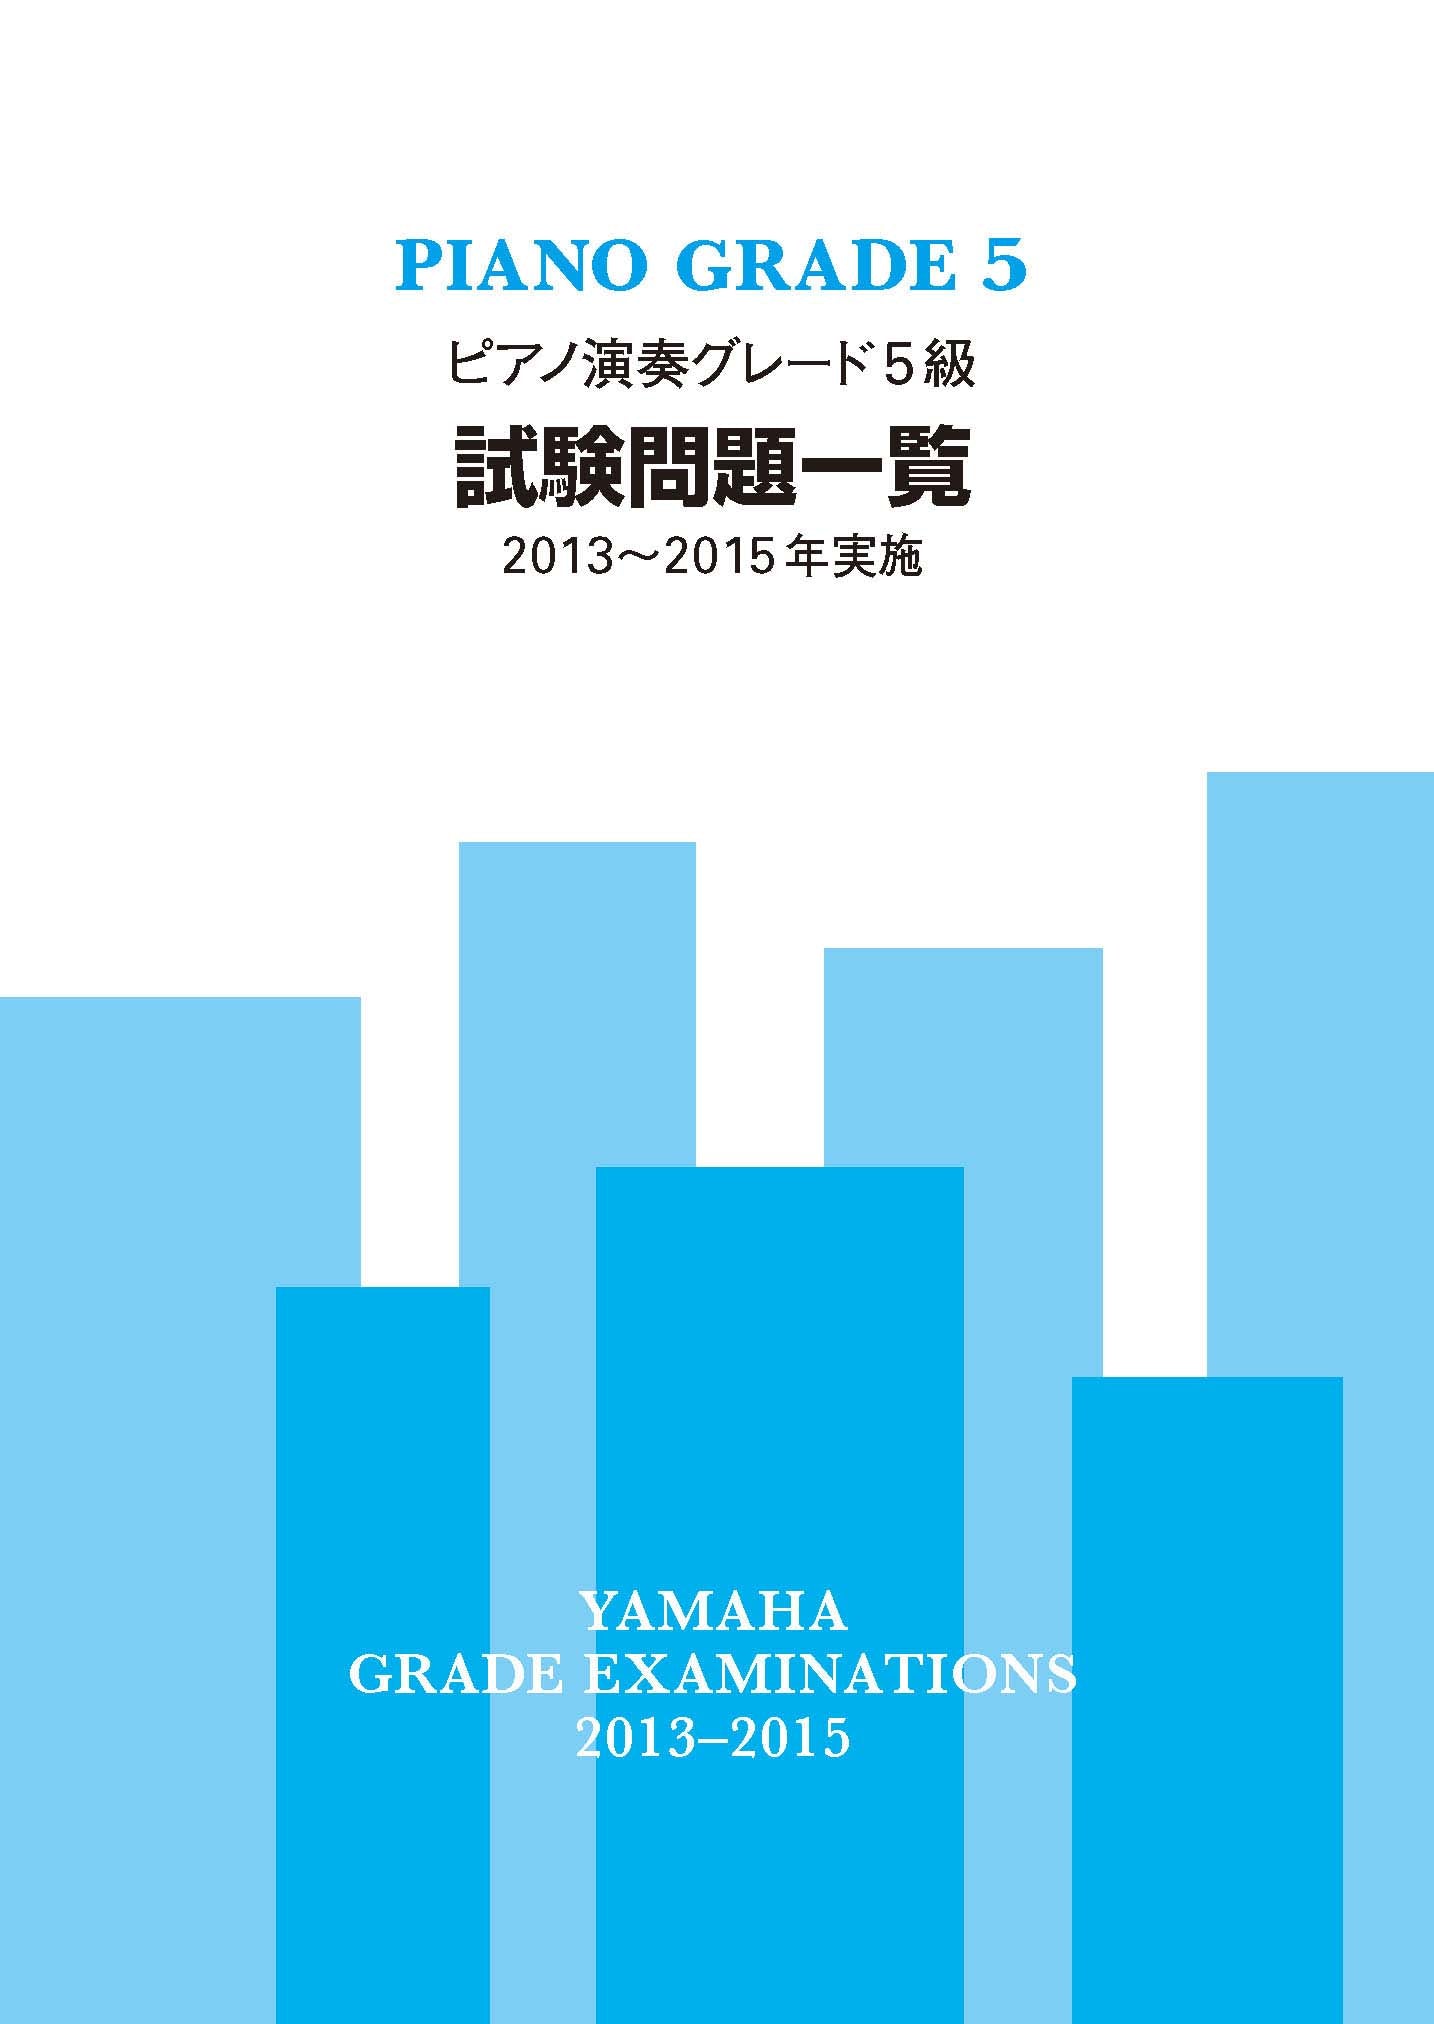 ピアノ演奏グレード5級 試験問題一覧 2013～2015年実施